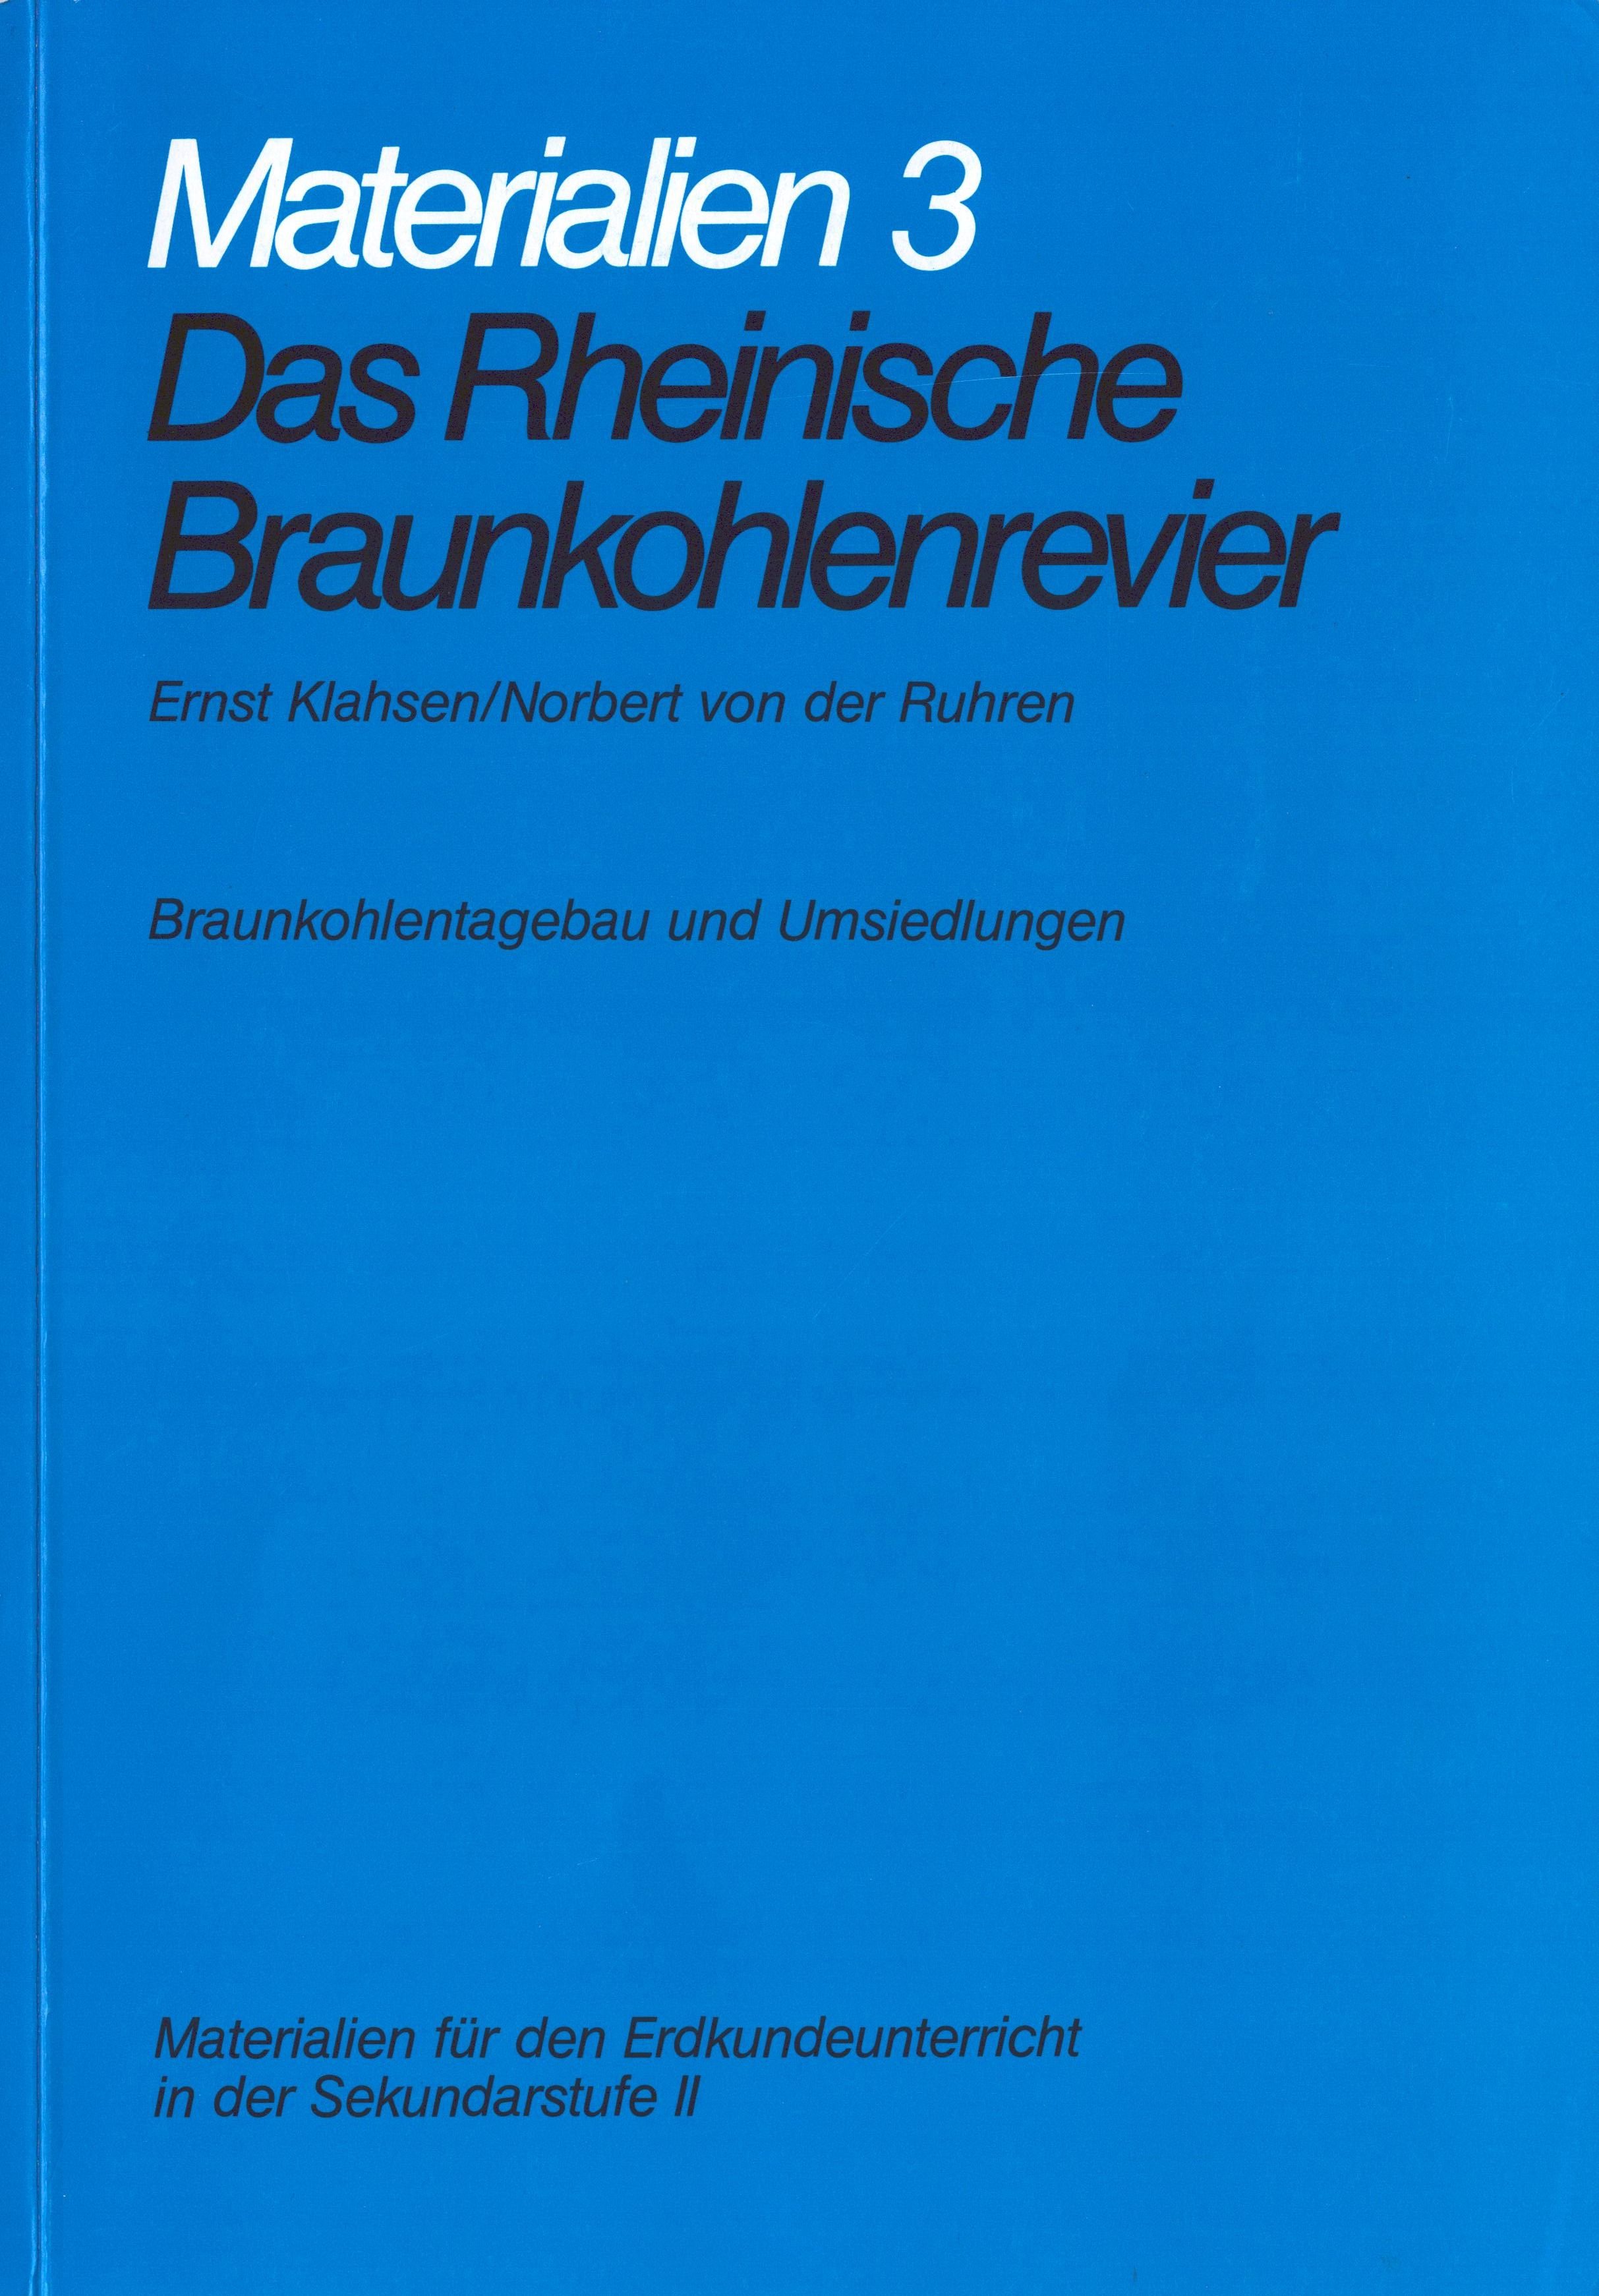 Das Rheinische Braunkohlenrevier. Materialien 3: Braunkohlentagebau und Umsiedlungen (Archiv SAXONIA-FREIBERG-STIFTUNG CC BY-NC-SA)